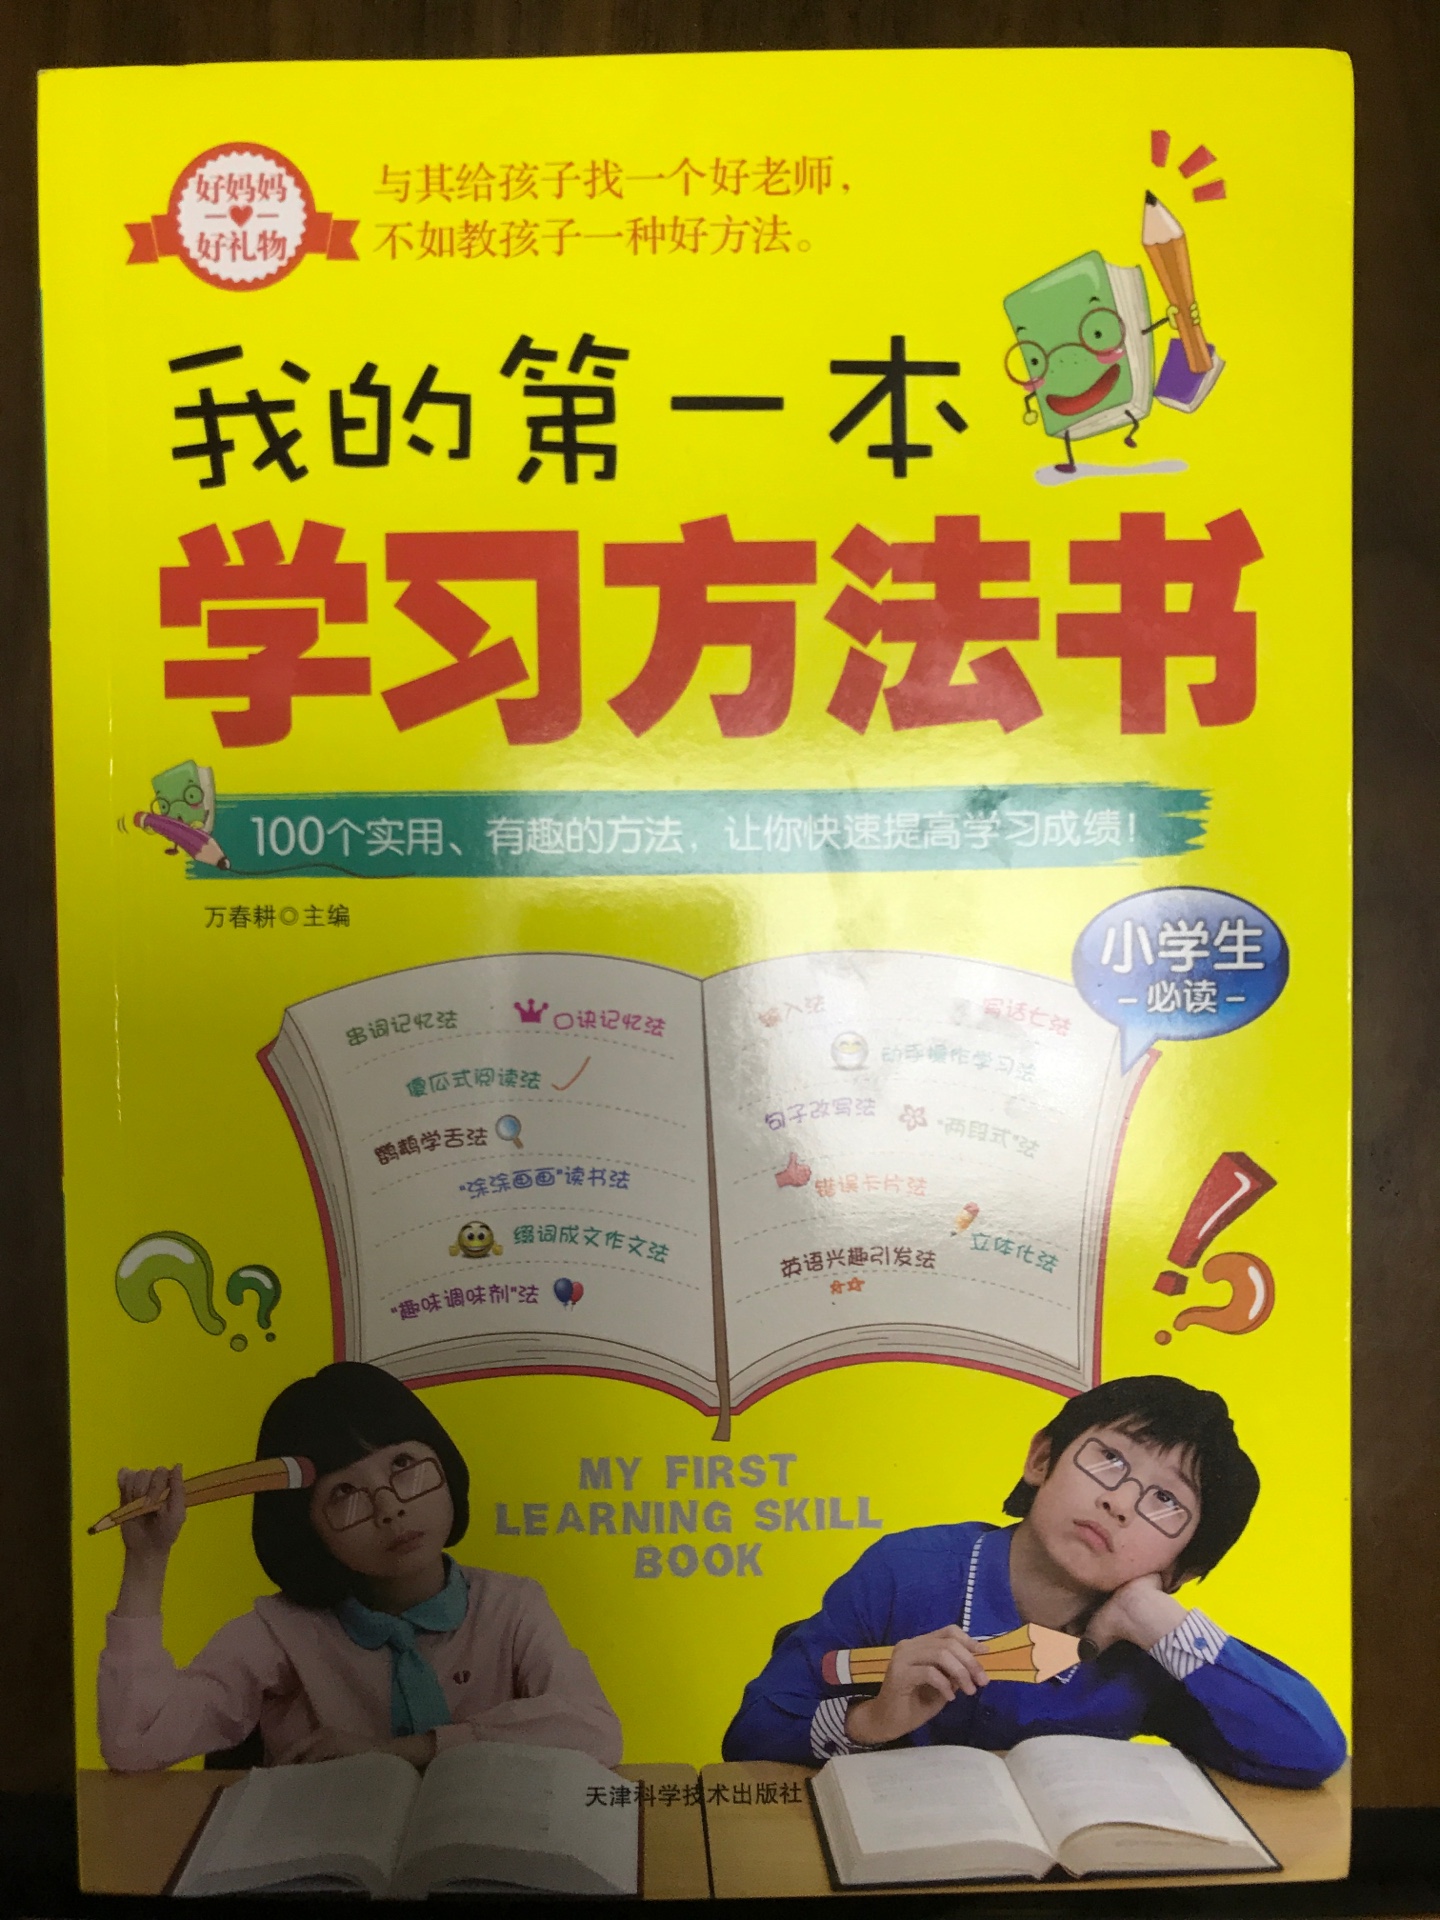 给孩子买的学习方法书，他很喜欢，希望对他学习有帮助